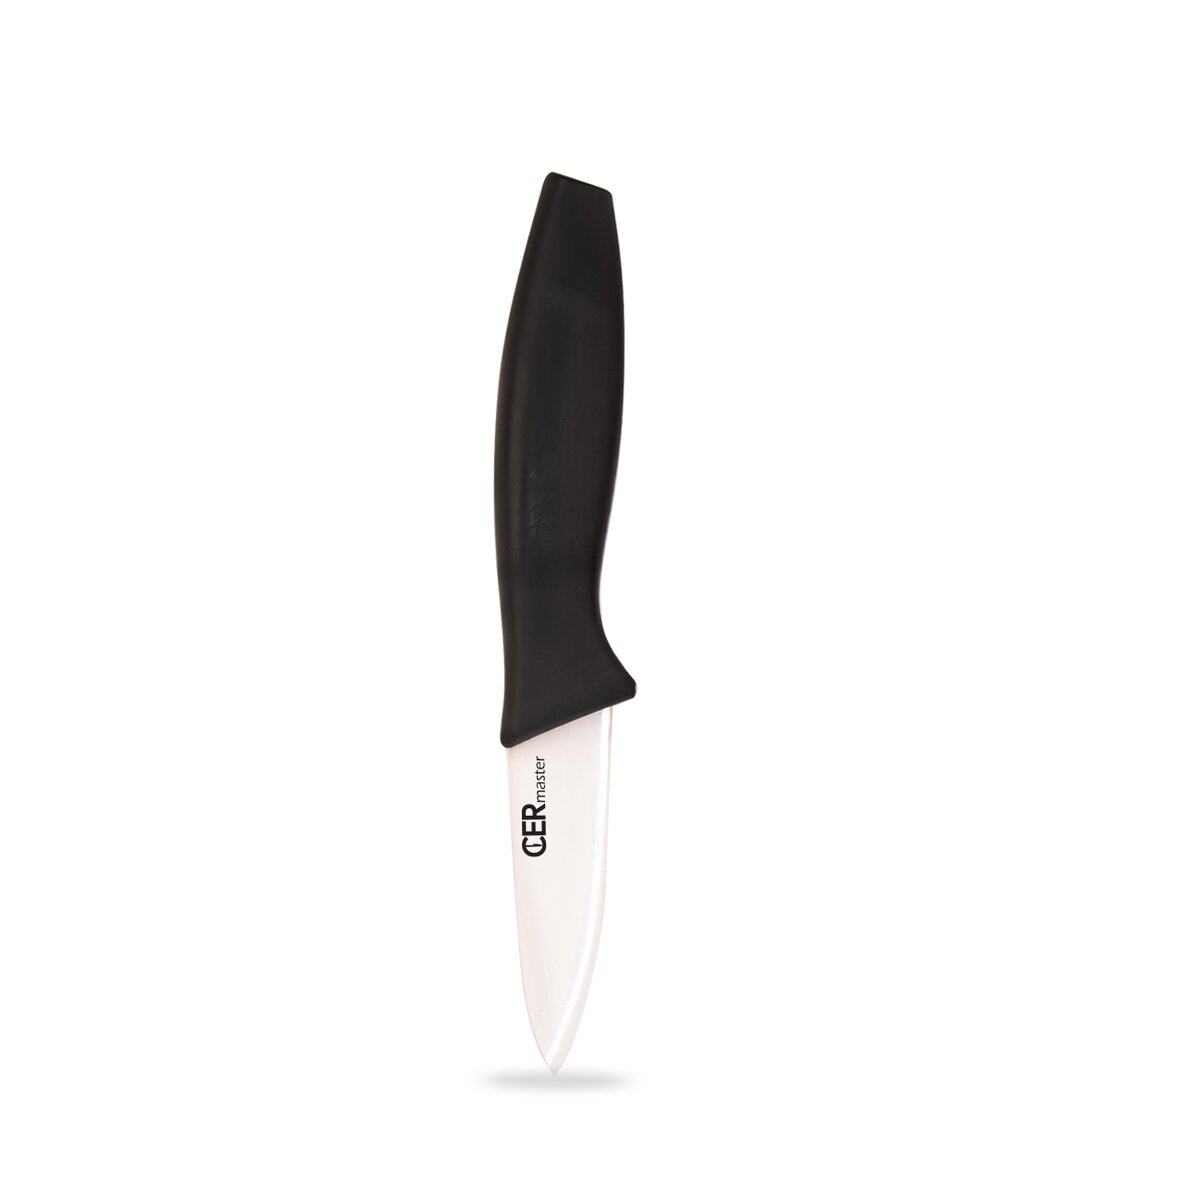 Kuchyňský nůž Cermaster s keramickou čepelí 7,5 cm (akční sada 2 ks)